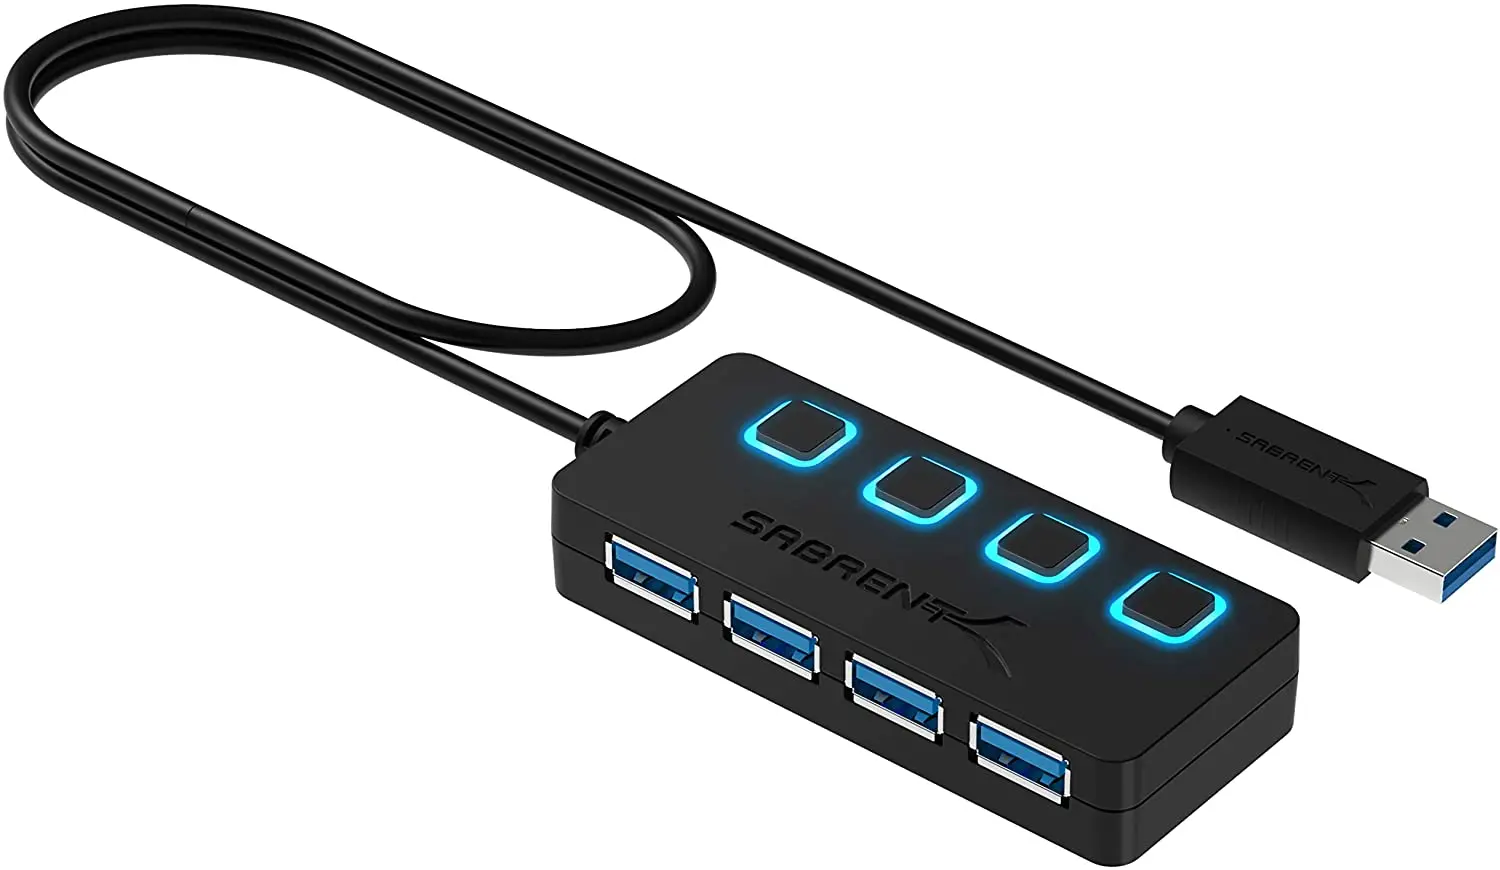 

4-портовый USB-концентратор sabпрокат 3,0, тонкий телефон с увеличенным кабелем длиной 2 фута, для Mac, XPS, ПК, флэш-накопителя, мобильного жесткого д...